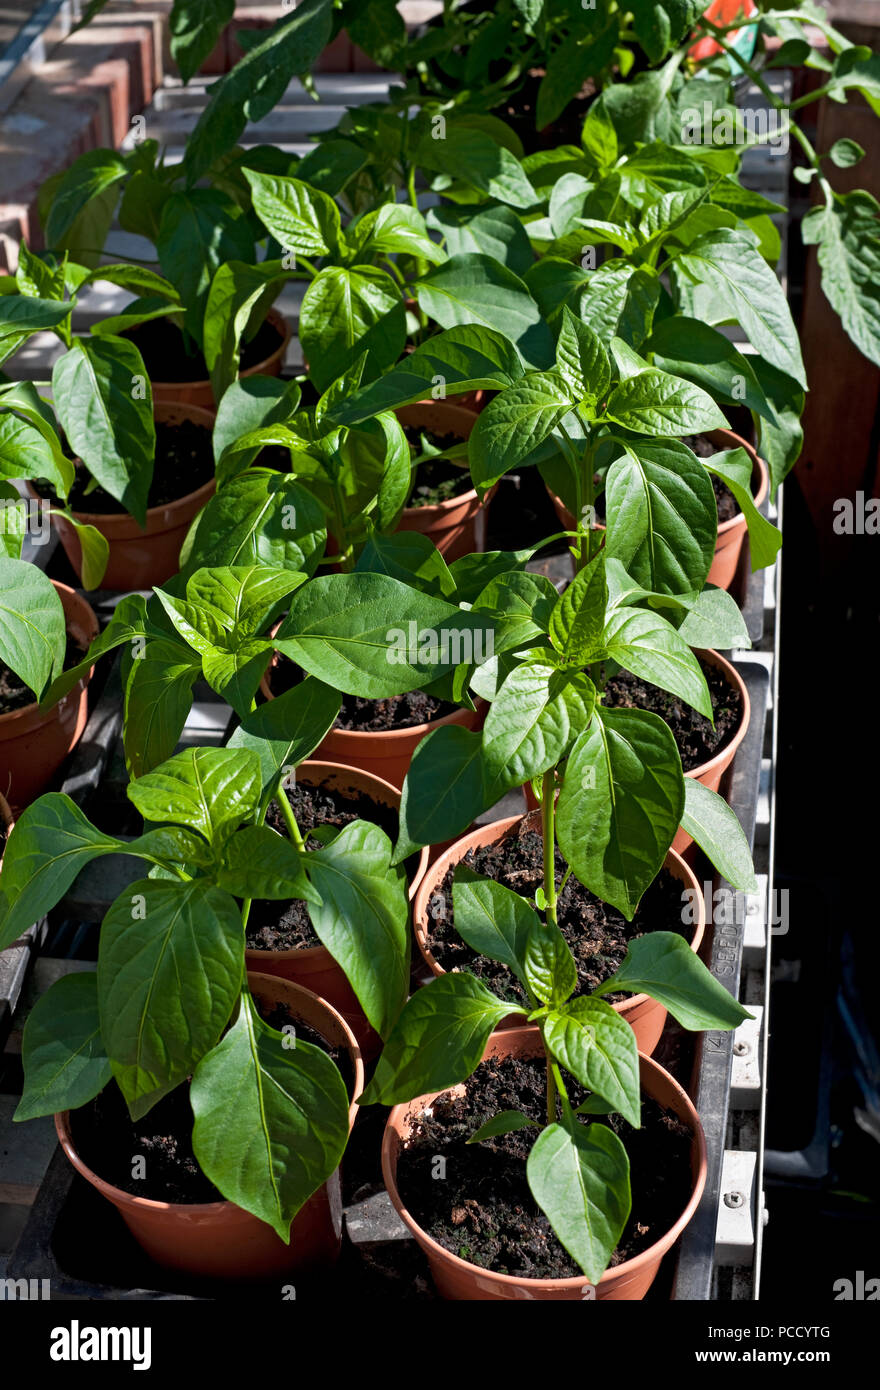 Gros plan de jeunes poivrons verts plantes poussant dans une serre dans des pots en été Angleterre Royaume-Uni Royaume-Uni Grande-Bretagne Banque D'Images